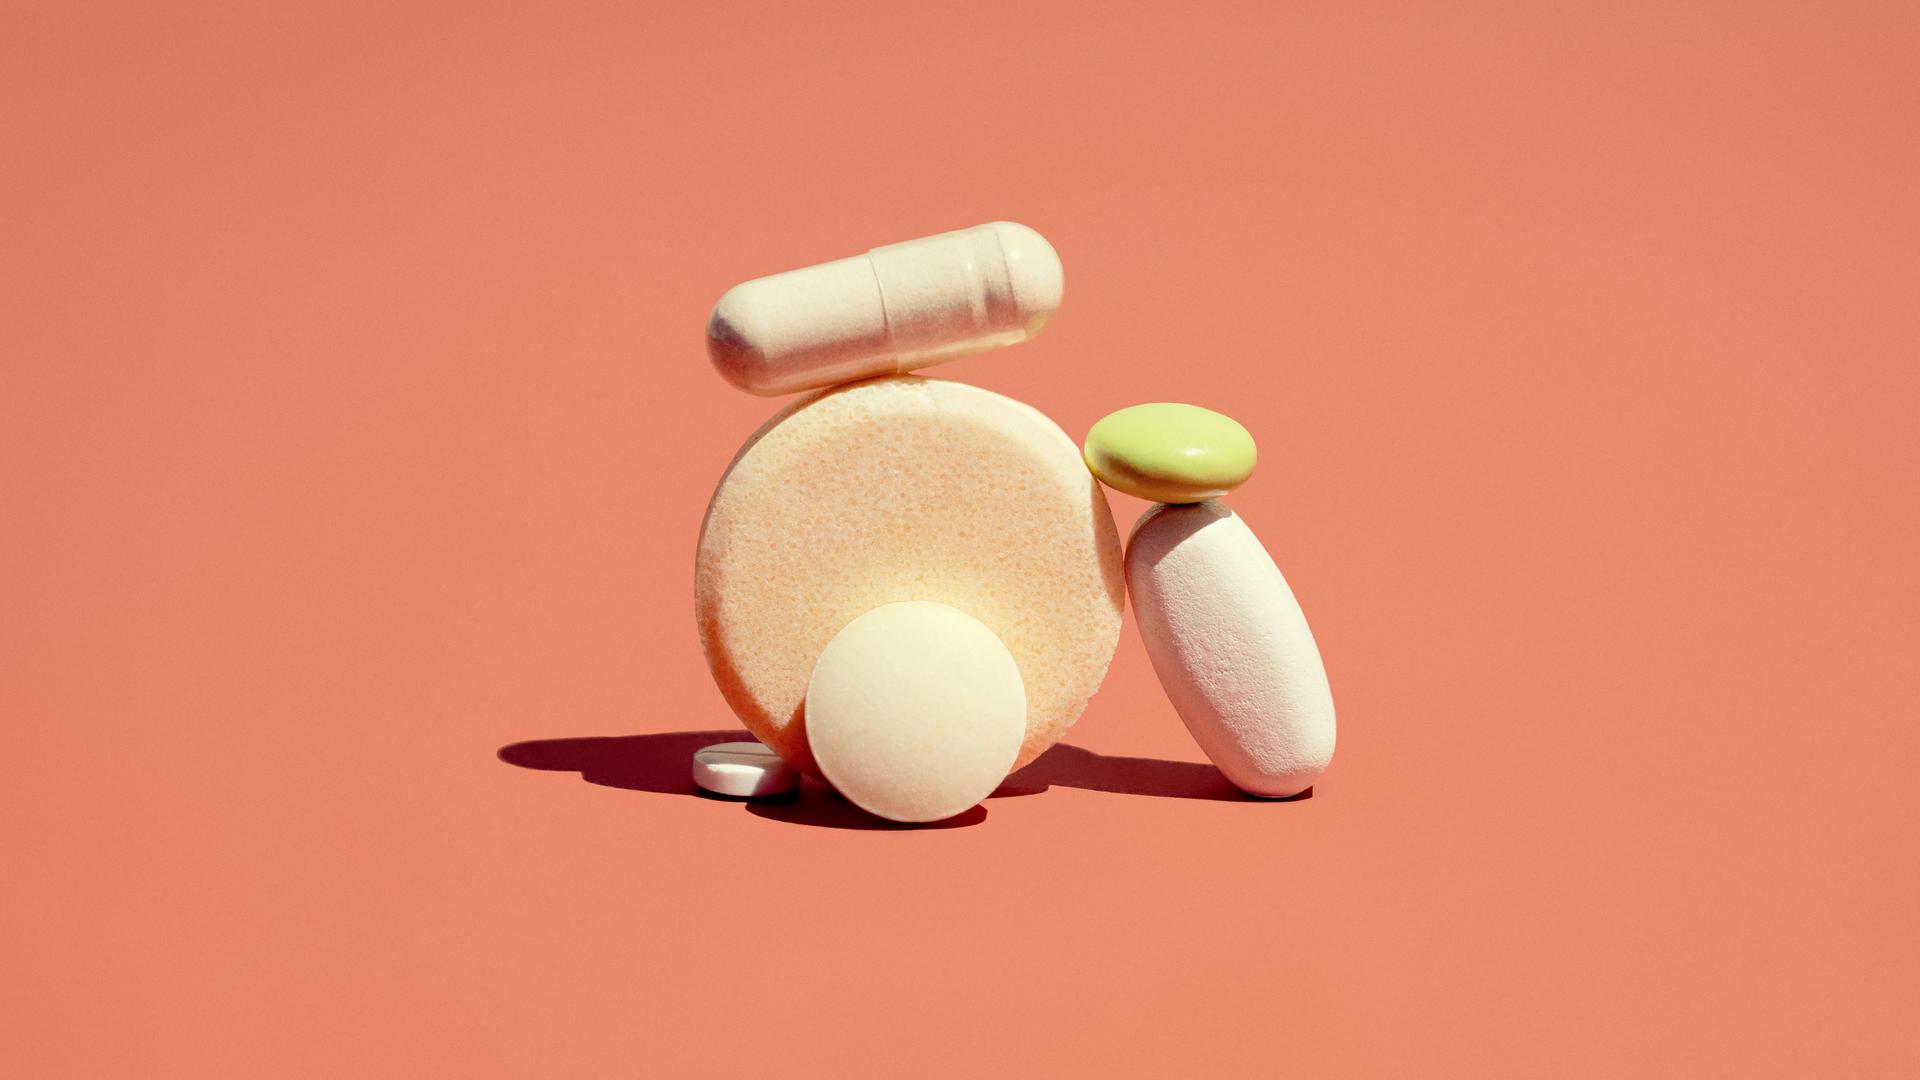 Medikamente in Form von Pillen und Zäpfchen liegen zu einem Türmchen gestapelt auf einem orange farbigem Hintergrund. 